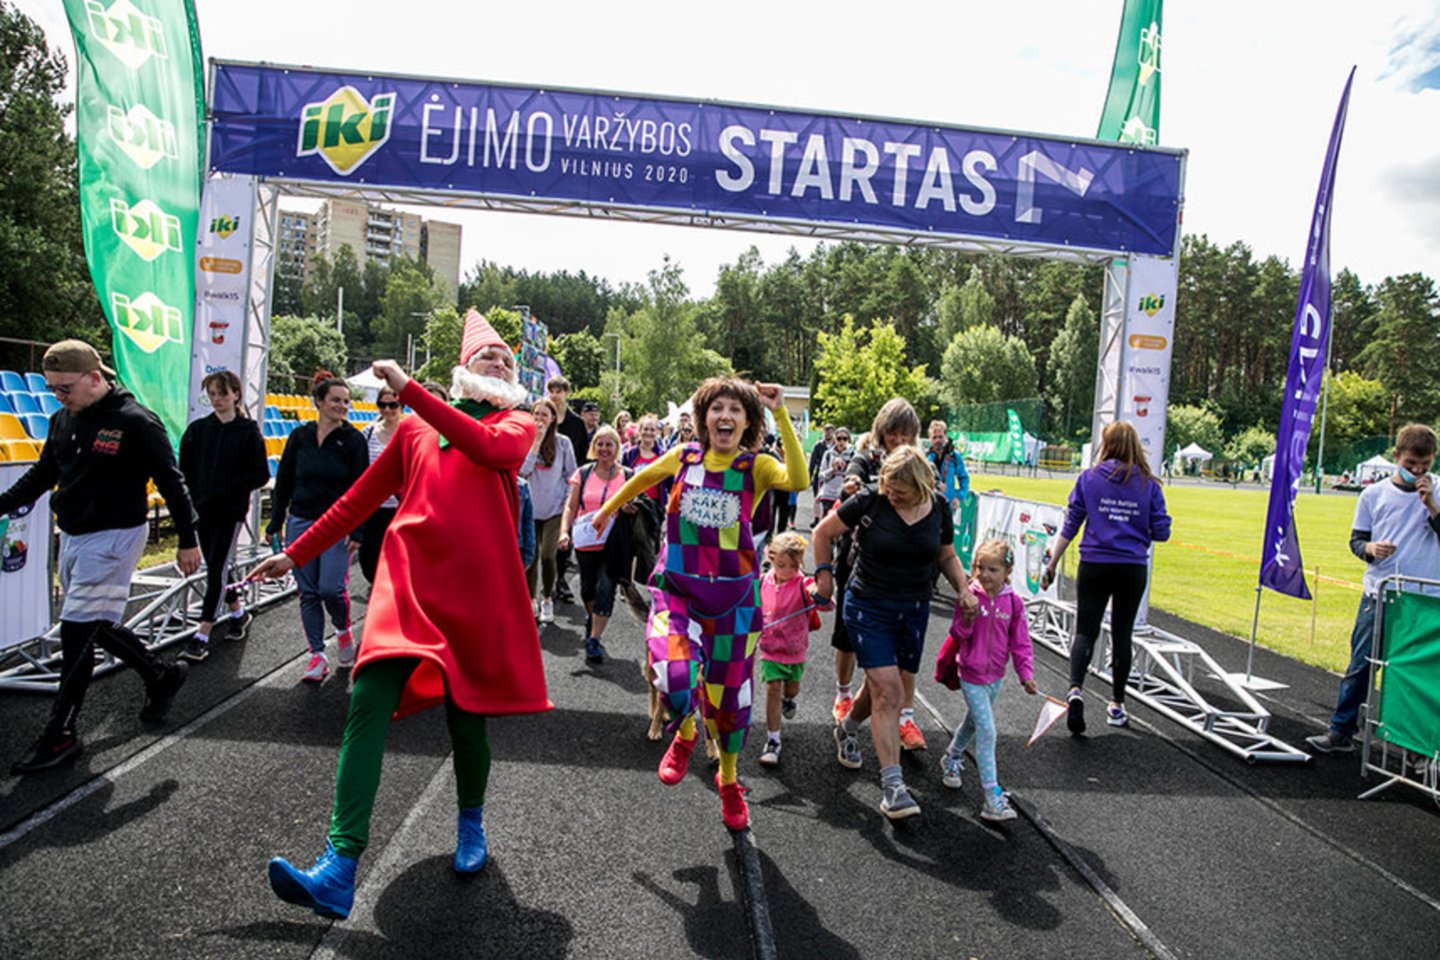 IKI Ėjimo varžybos 2020 Vilnius – akimirkomis<br> walk15 nuotr.